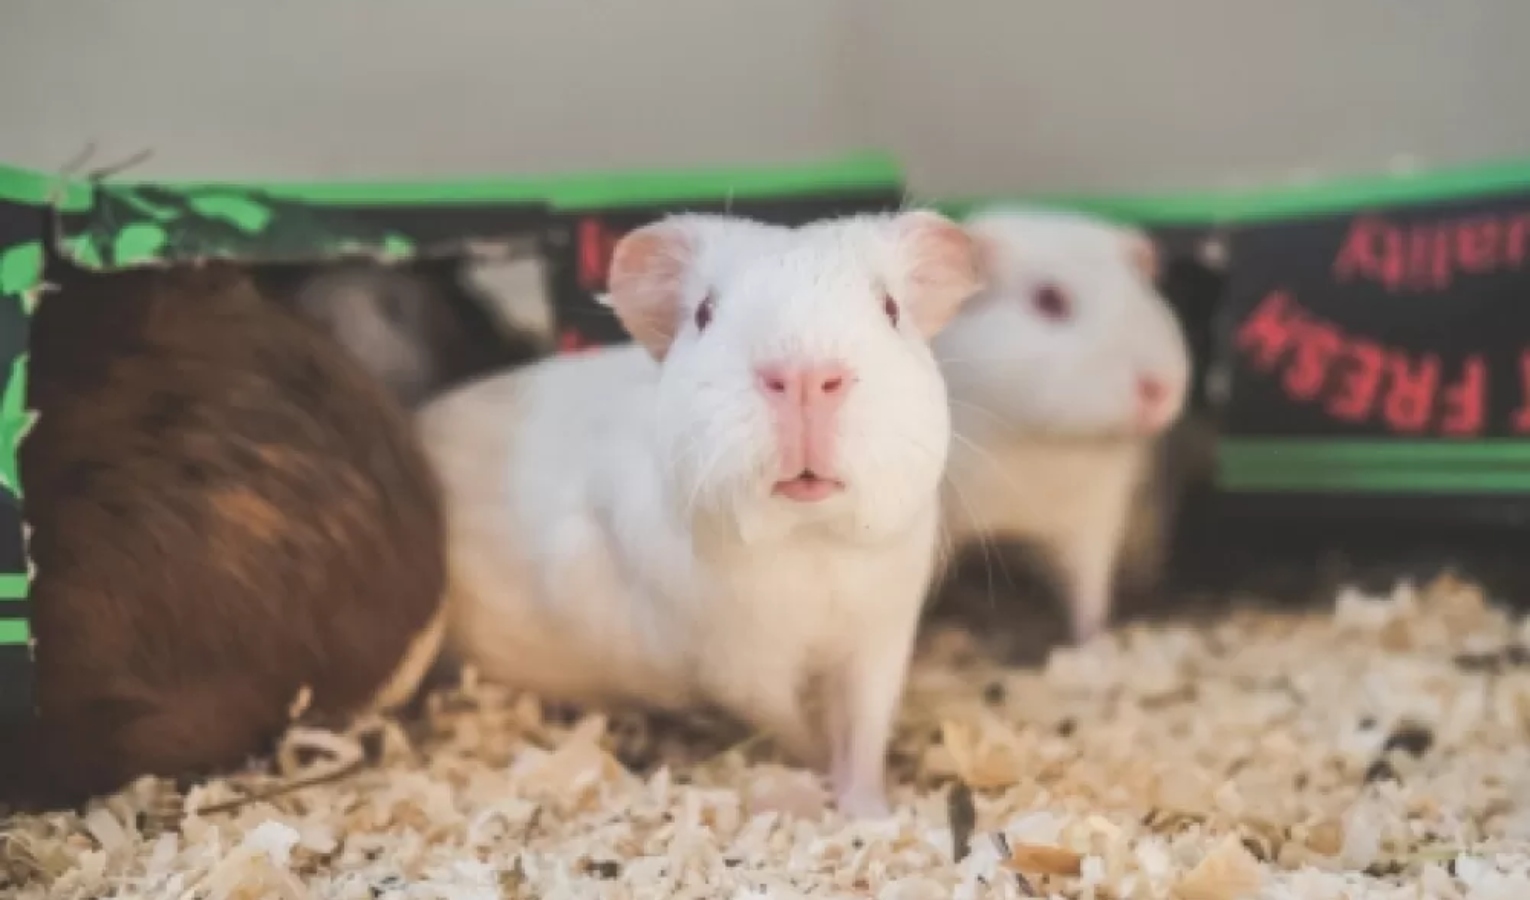 Primocanile - Conigli, cavie e ratti: una seconda vita dopo il laboratorio